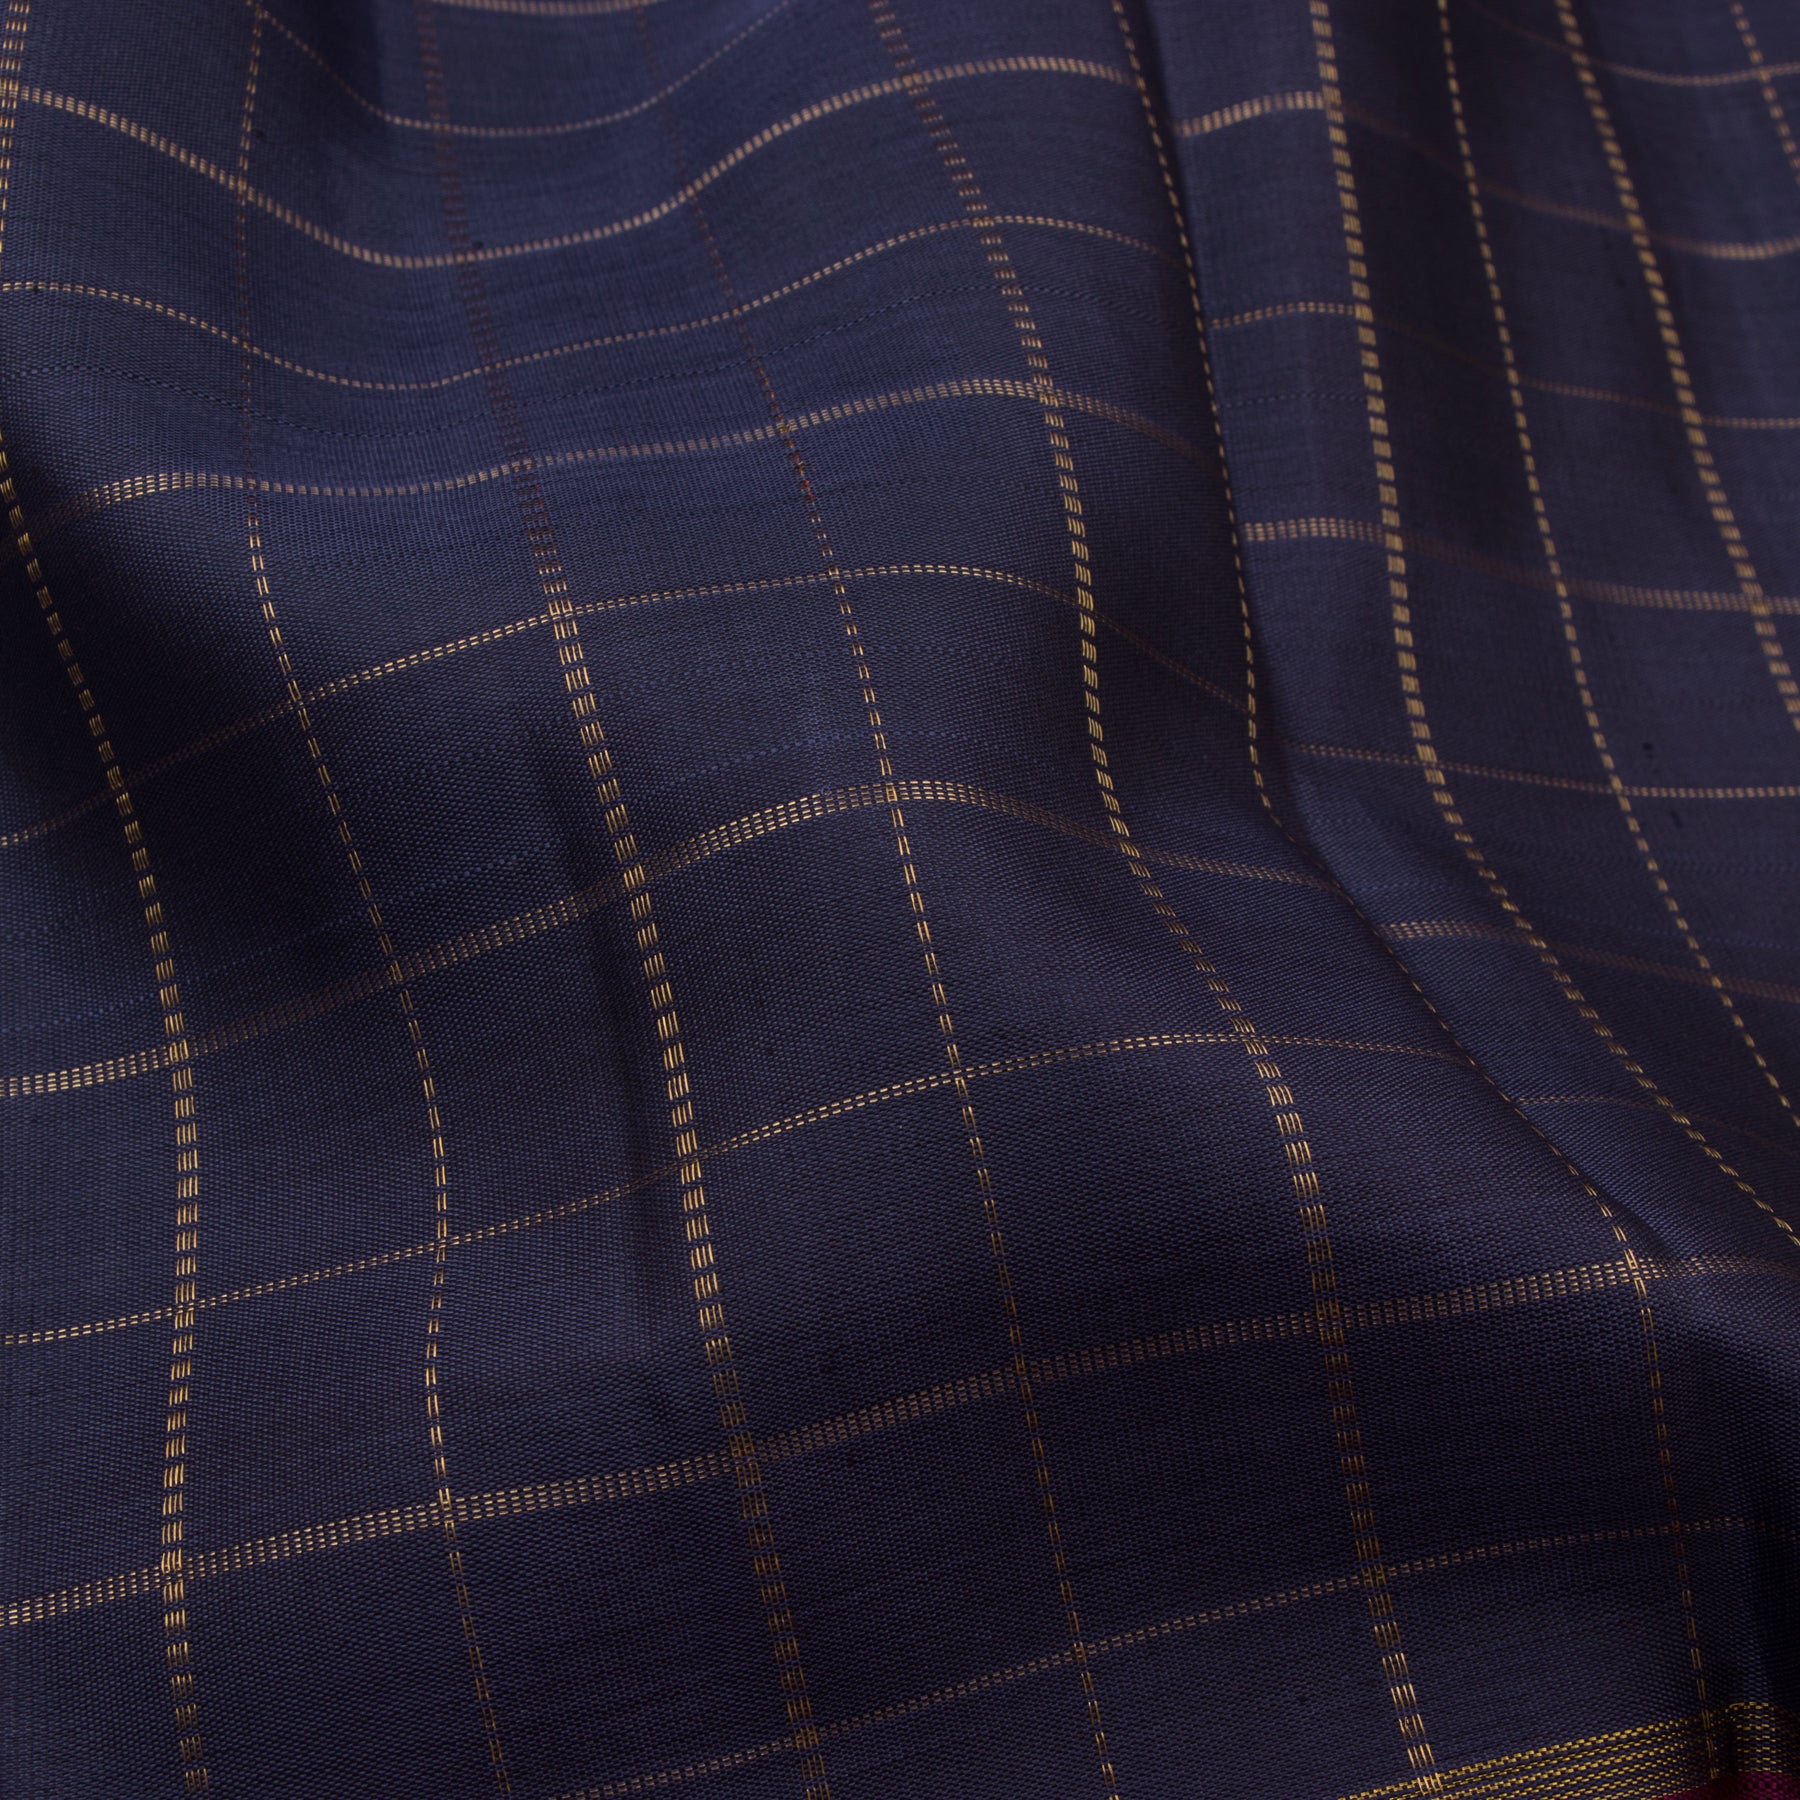 Kanakavalli Kanjivaram Silk Sari 23-599-HS001-00662 - Fabric View